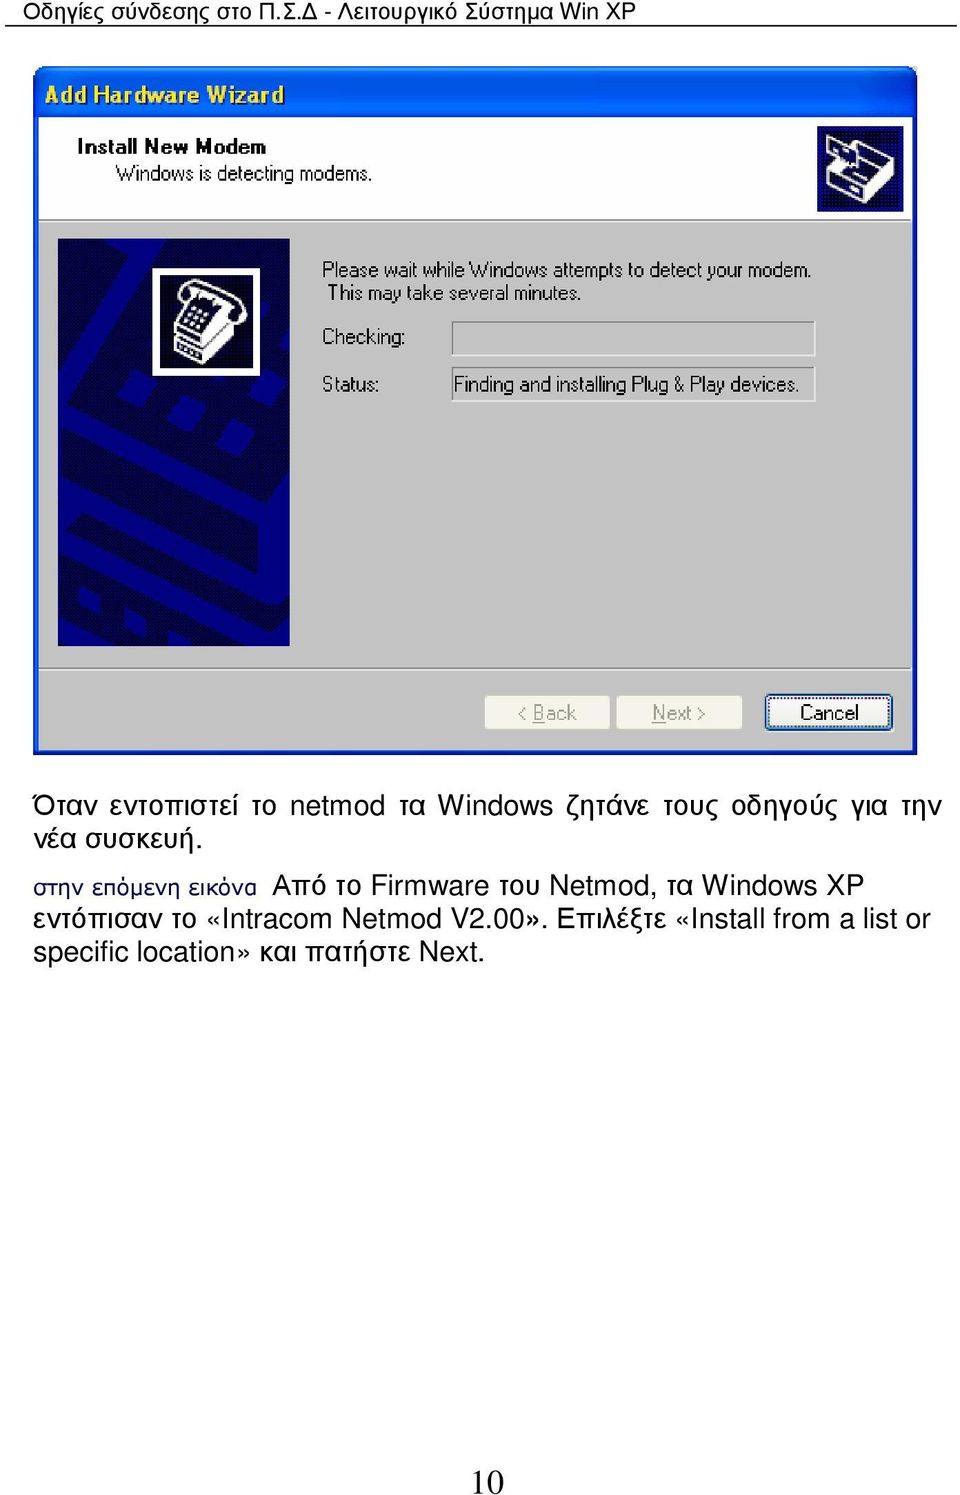 στην επόµενη εικόνα Από το Firmware του Netmod, τα Windows XP